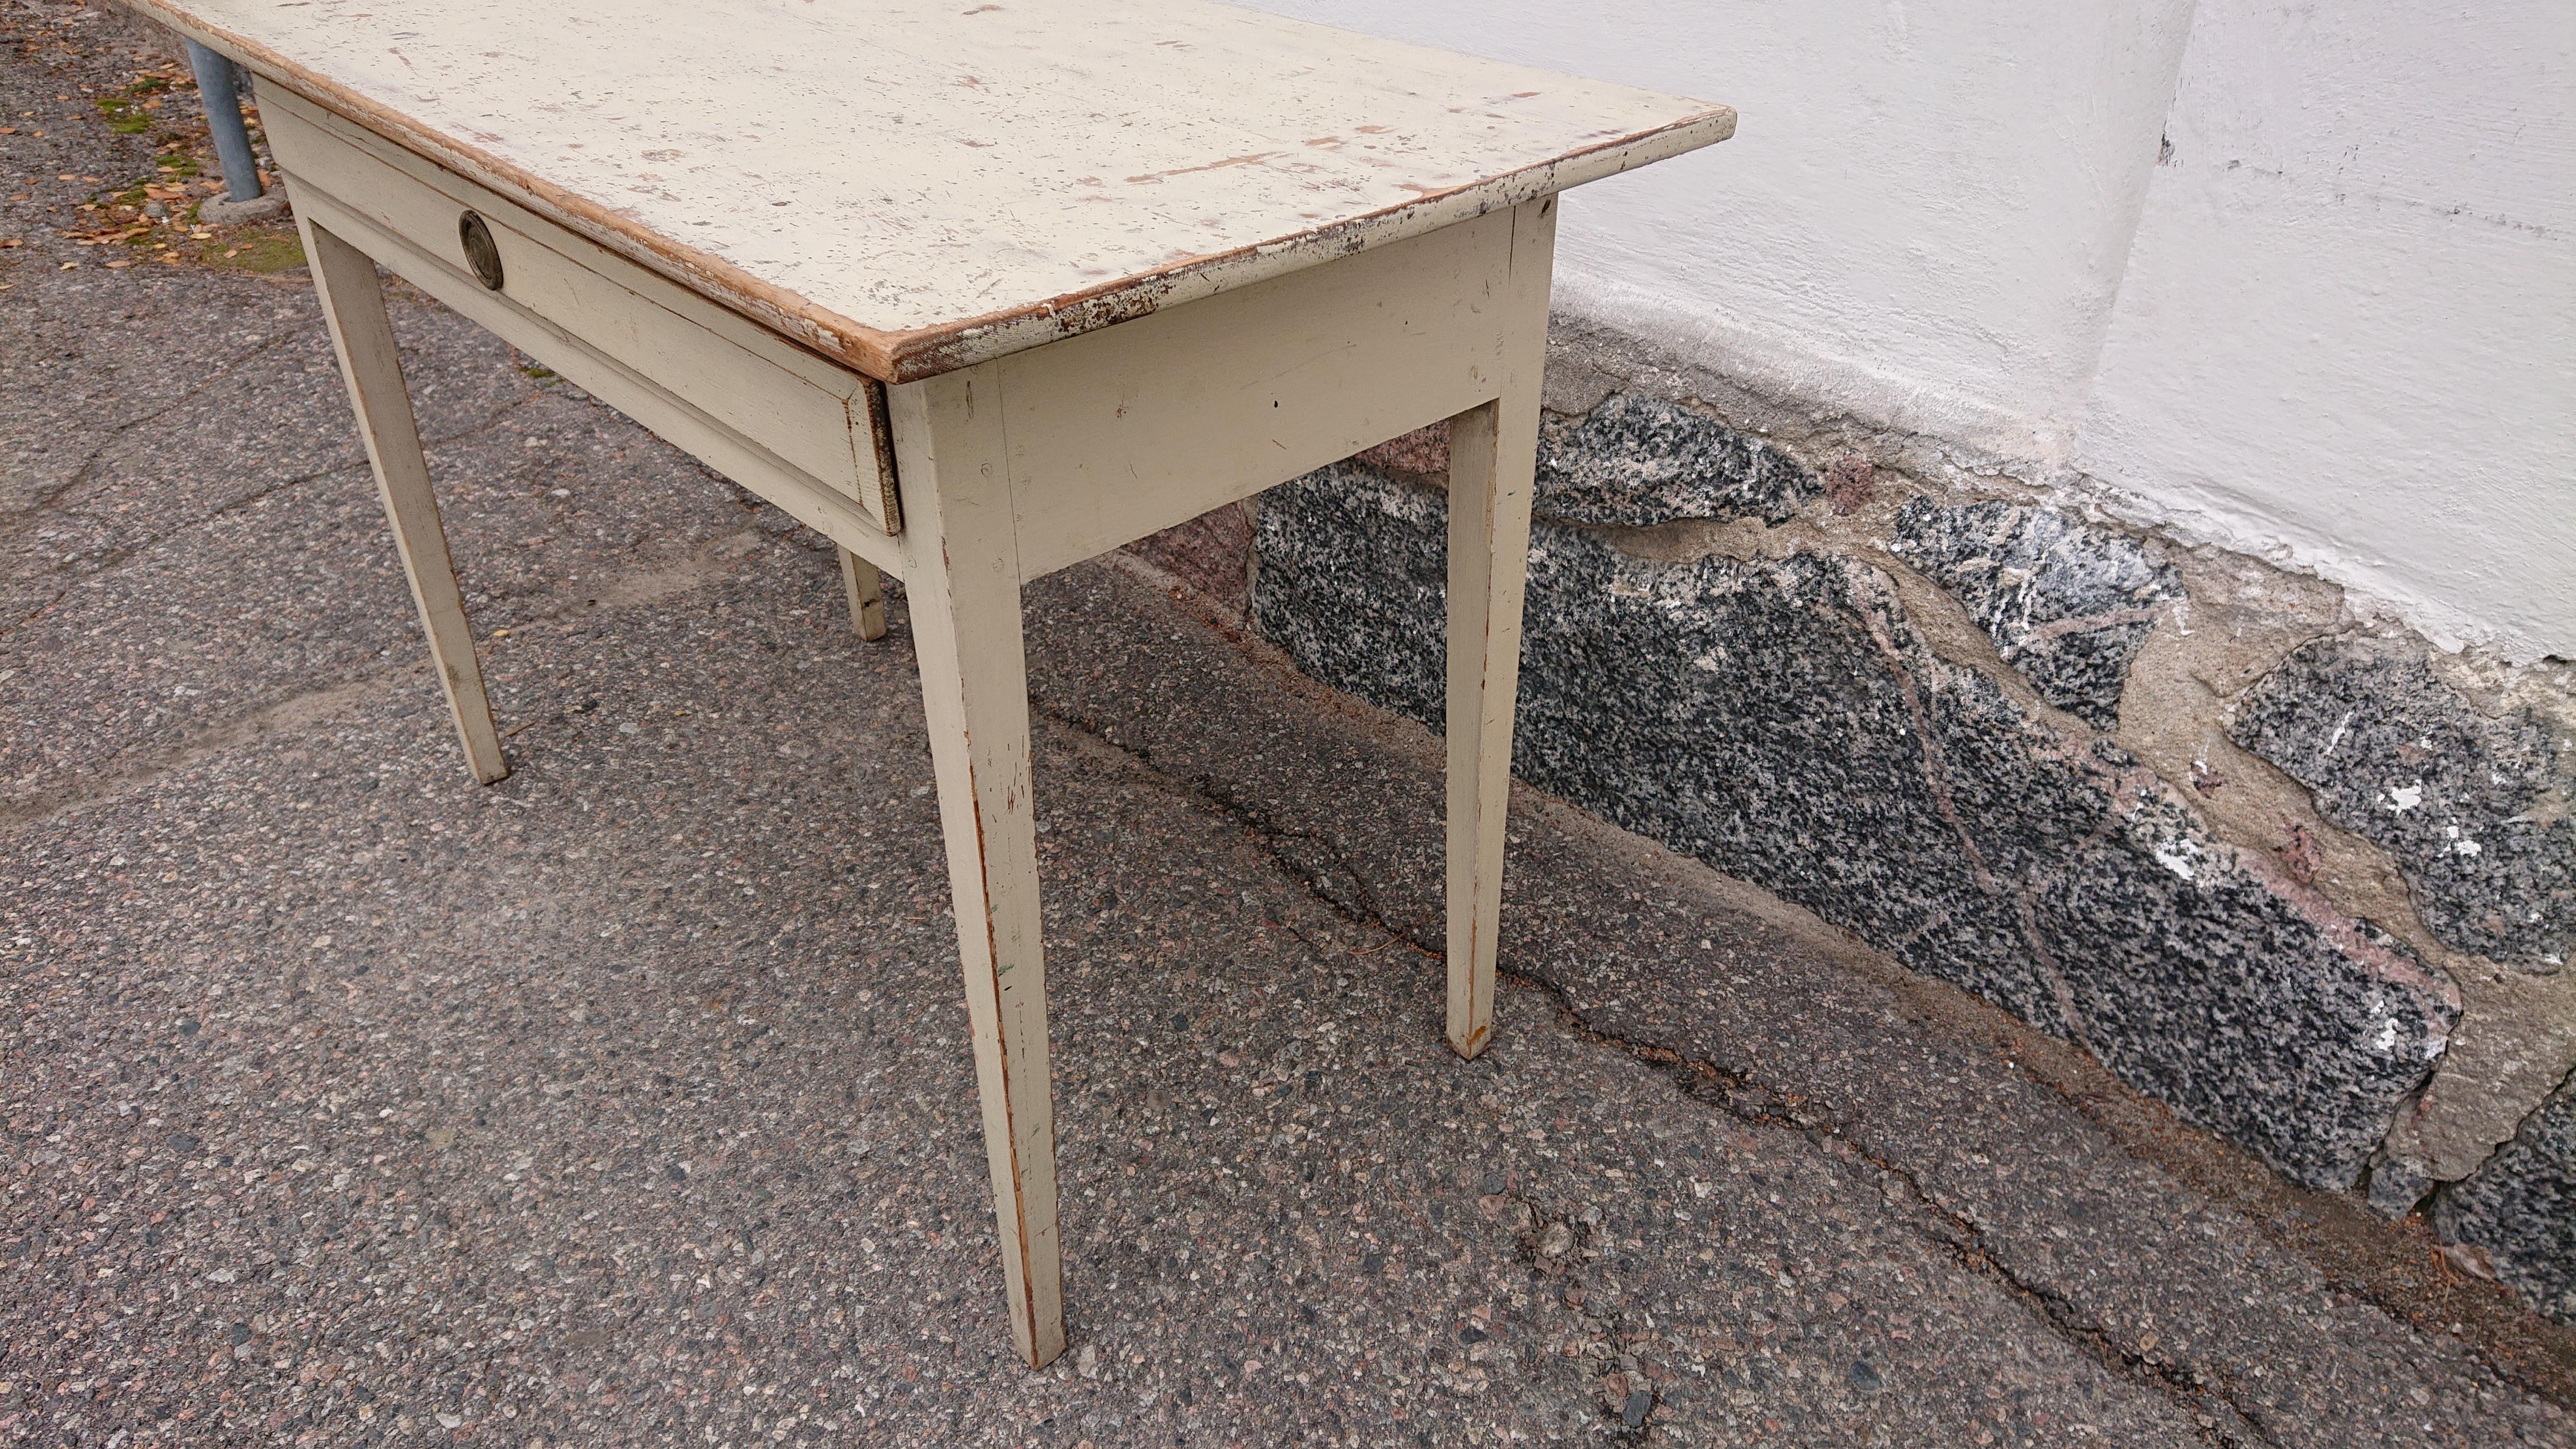 schwedischer Gustavianischer Schreibtisch aus dem 19. Jahrhundert aus Lulea Norrbotten, Nordschweden.
Ein schöner Schreibtisch mit schöner Requisite und gutem Zustand.
Unberührter Sockel, die Oberseite ist abgeschabt und bis zur Originalfarbe